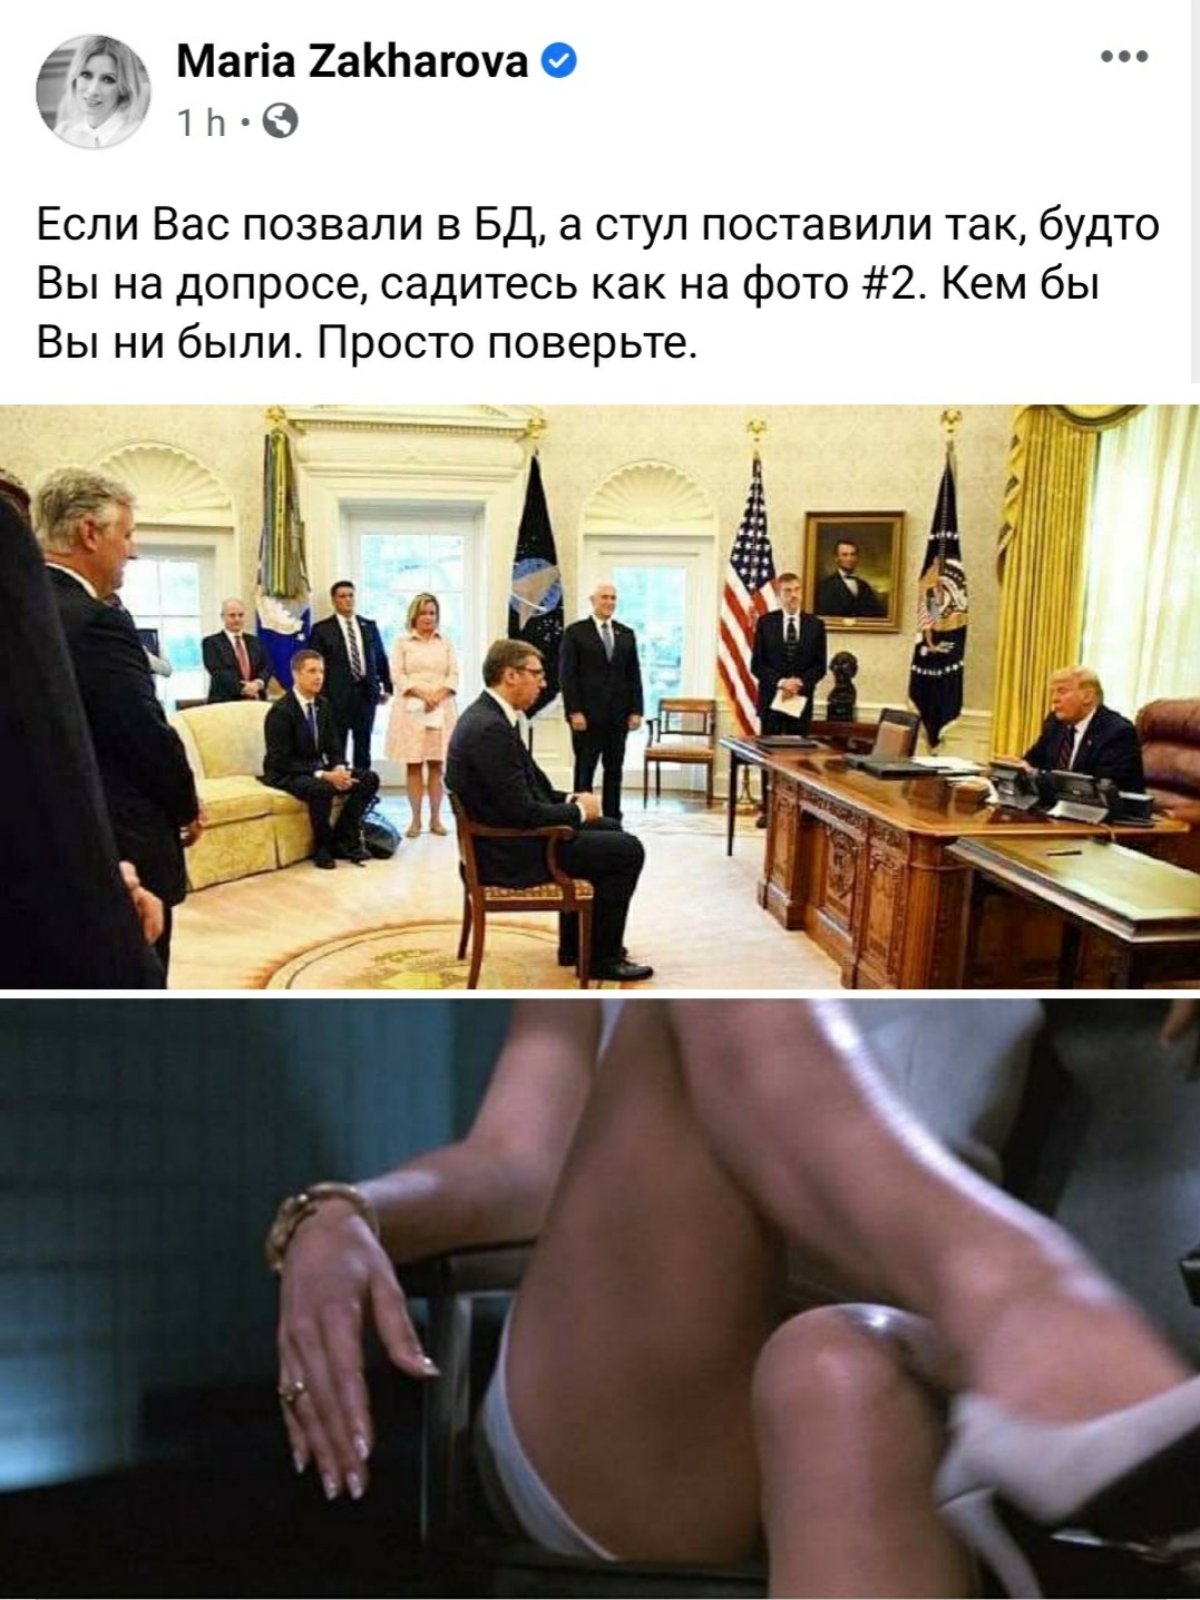 Изначальный пост Марии Захаровой о визите Вучича в Белый дом. Скриншот Facebook Марии Захаровой 